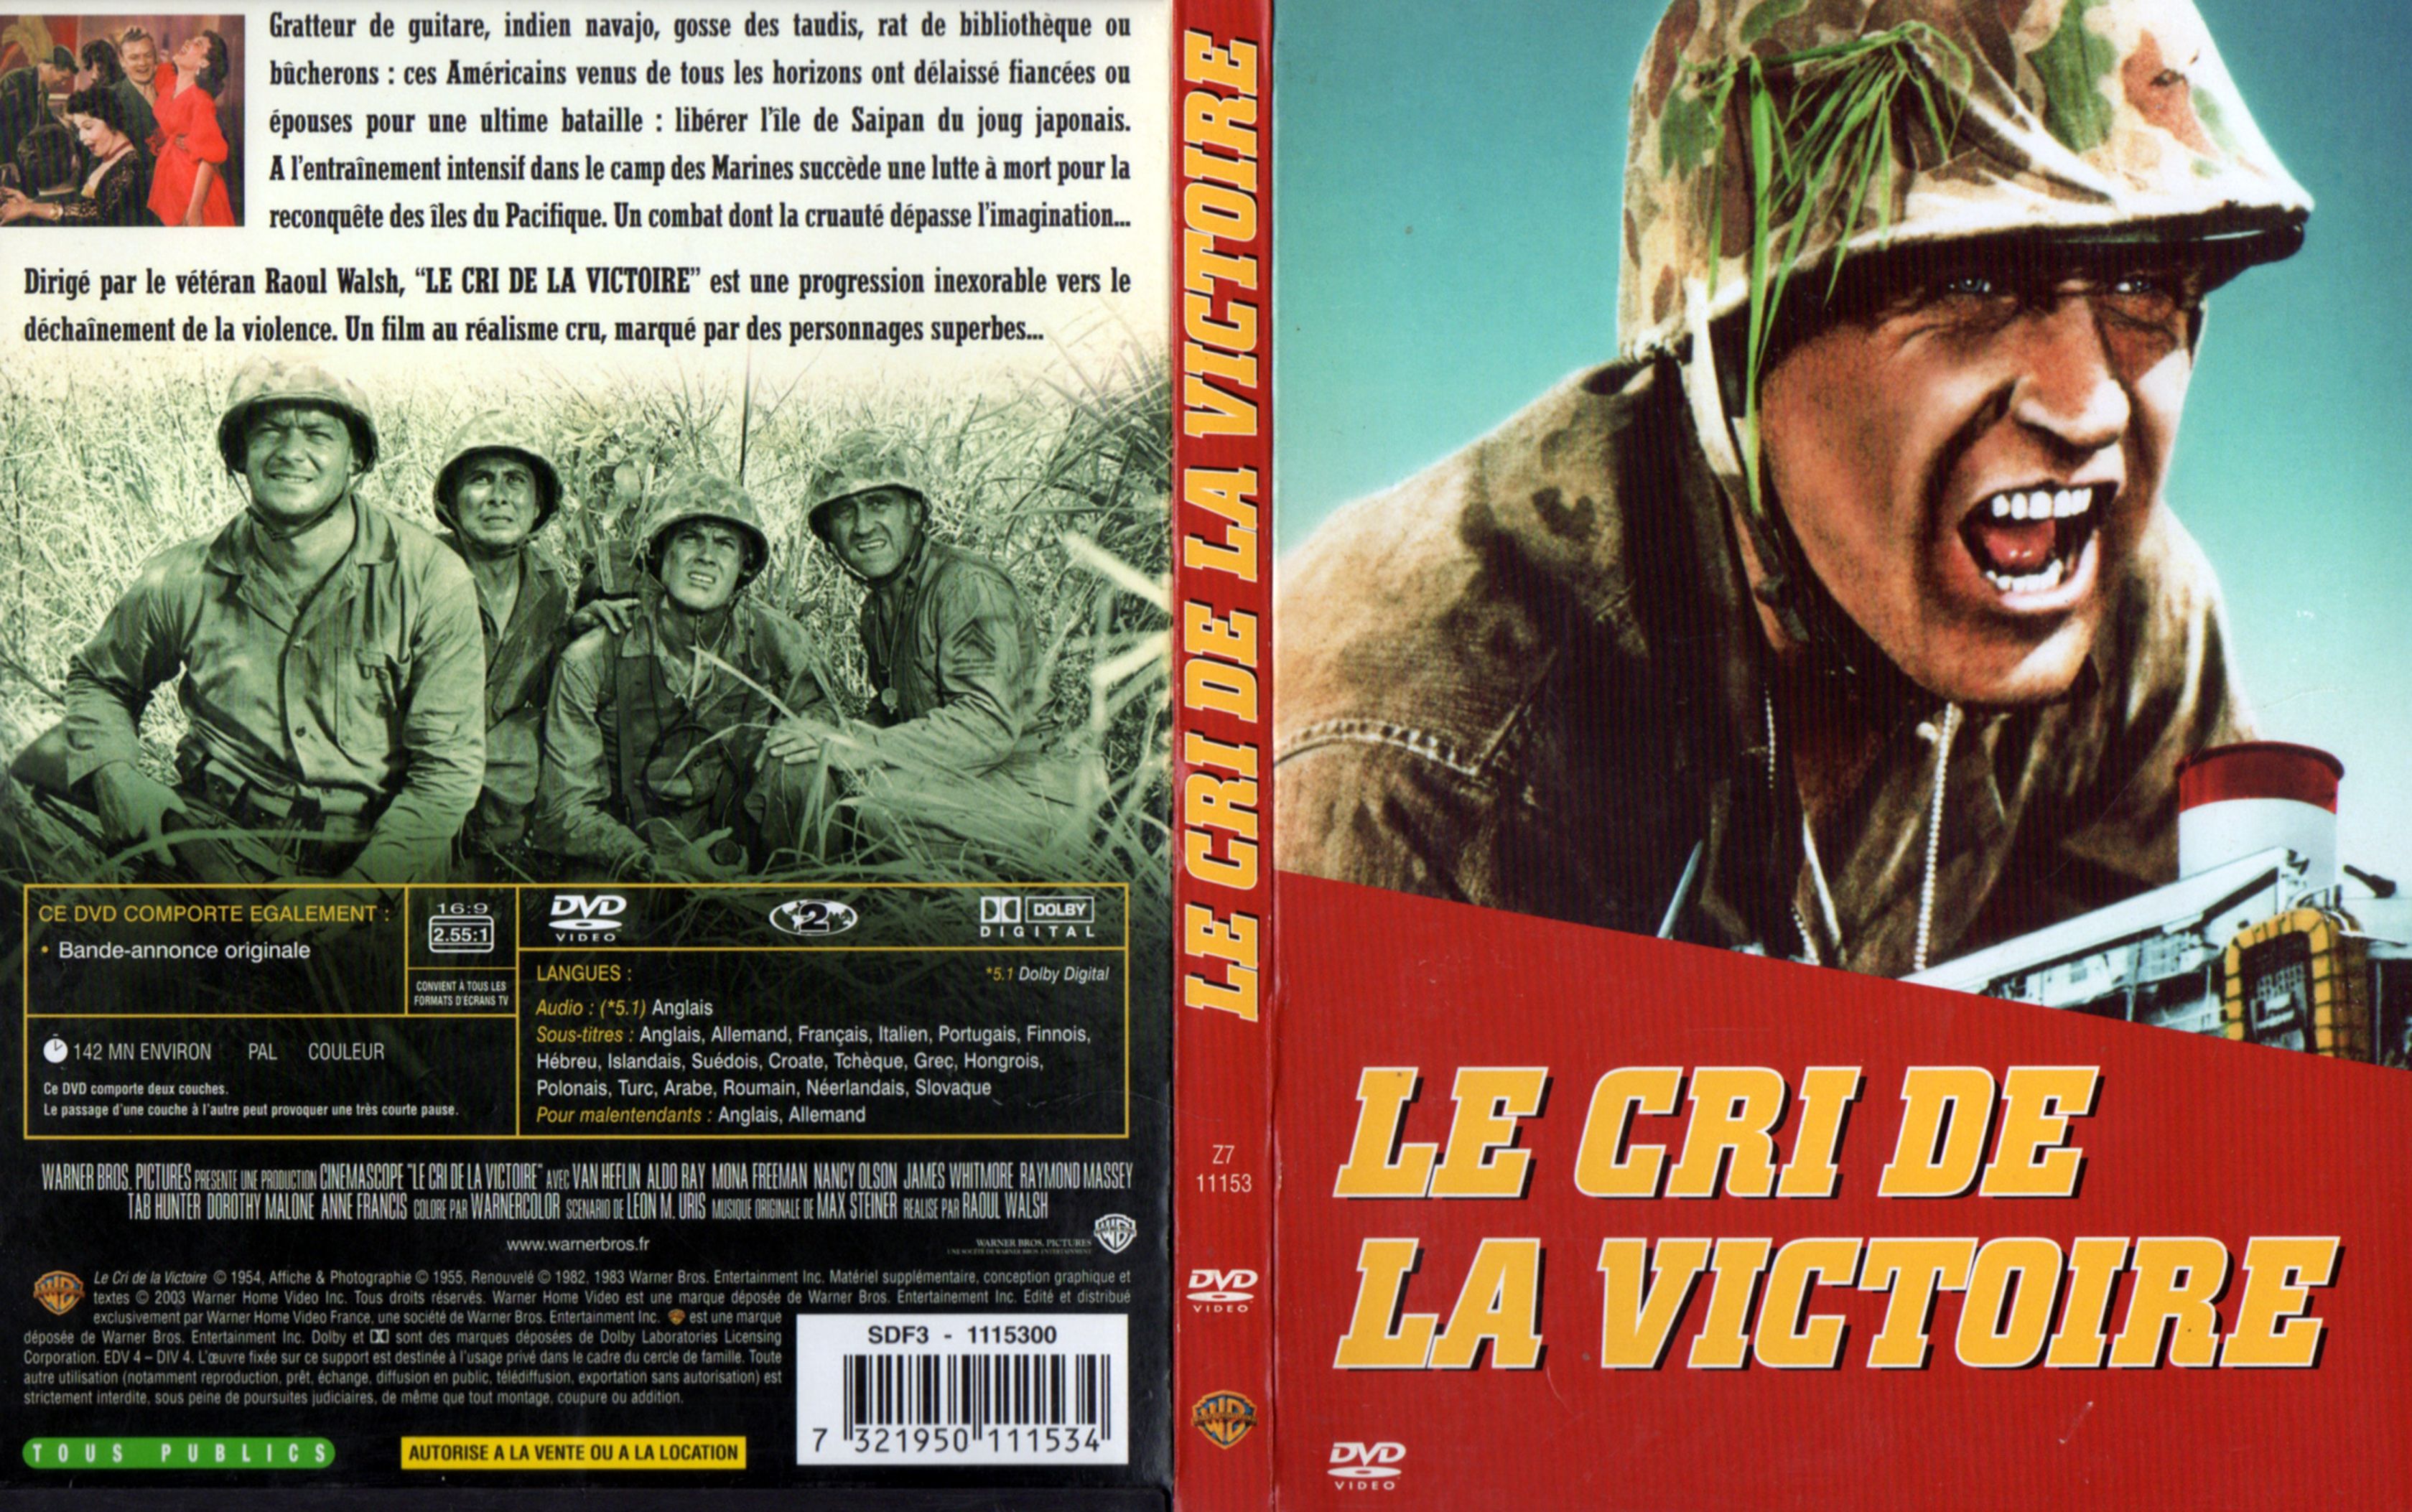 Jaquette DVD Le Cri de la victoire v2